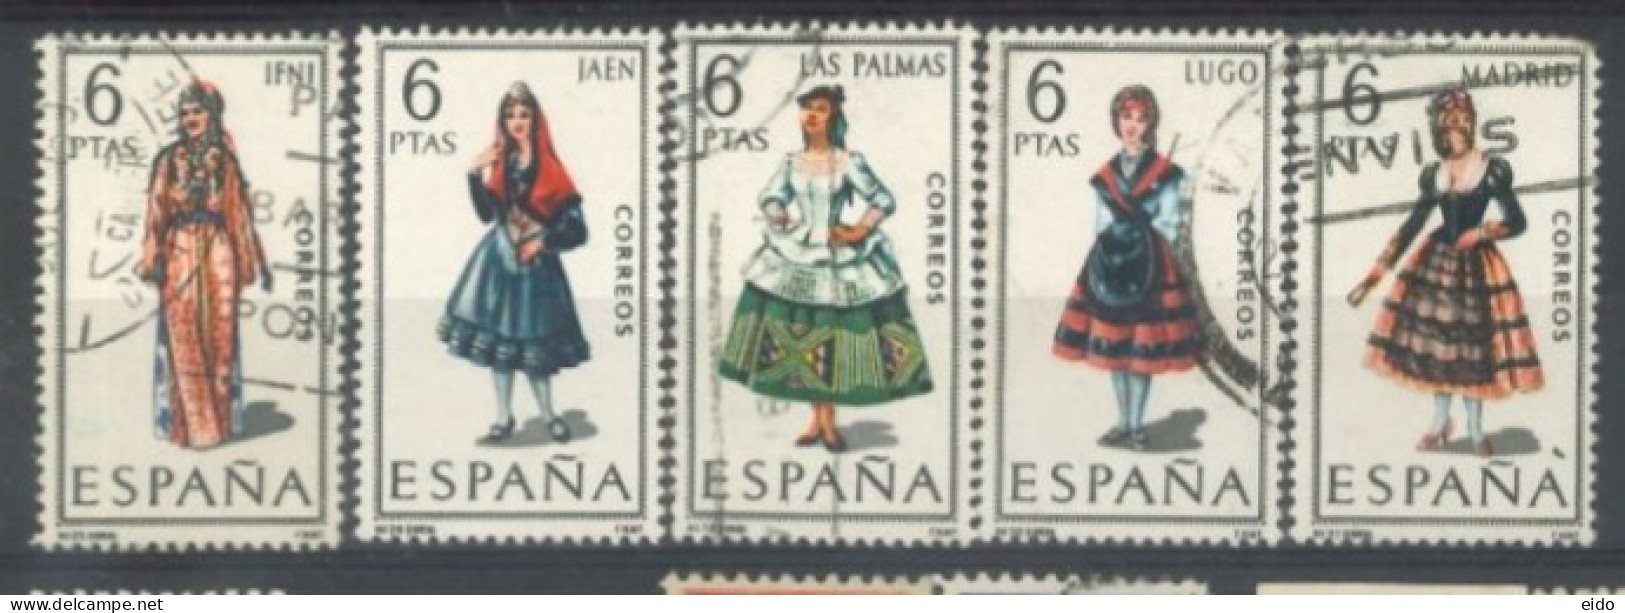 SPAIN, 1969, REGIONAL COSTUMES STAMPS SET OF 5, # 1416/17,1421/22/34, &1437, USED. - Gebruikt